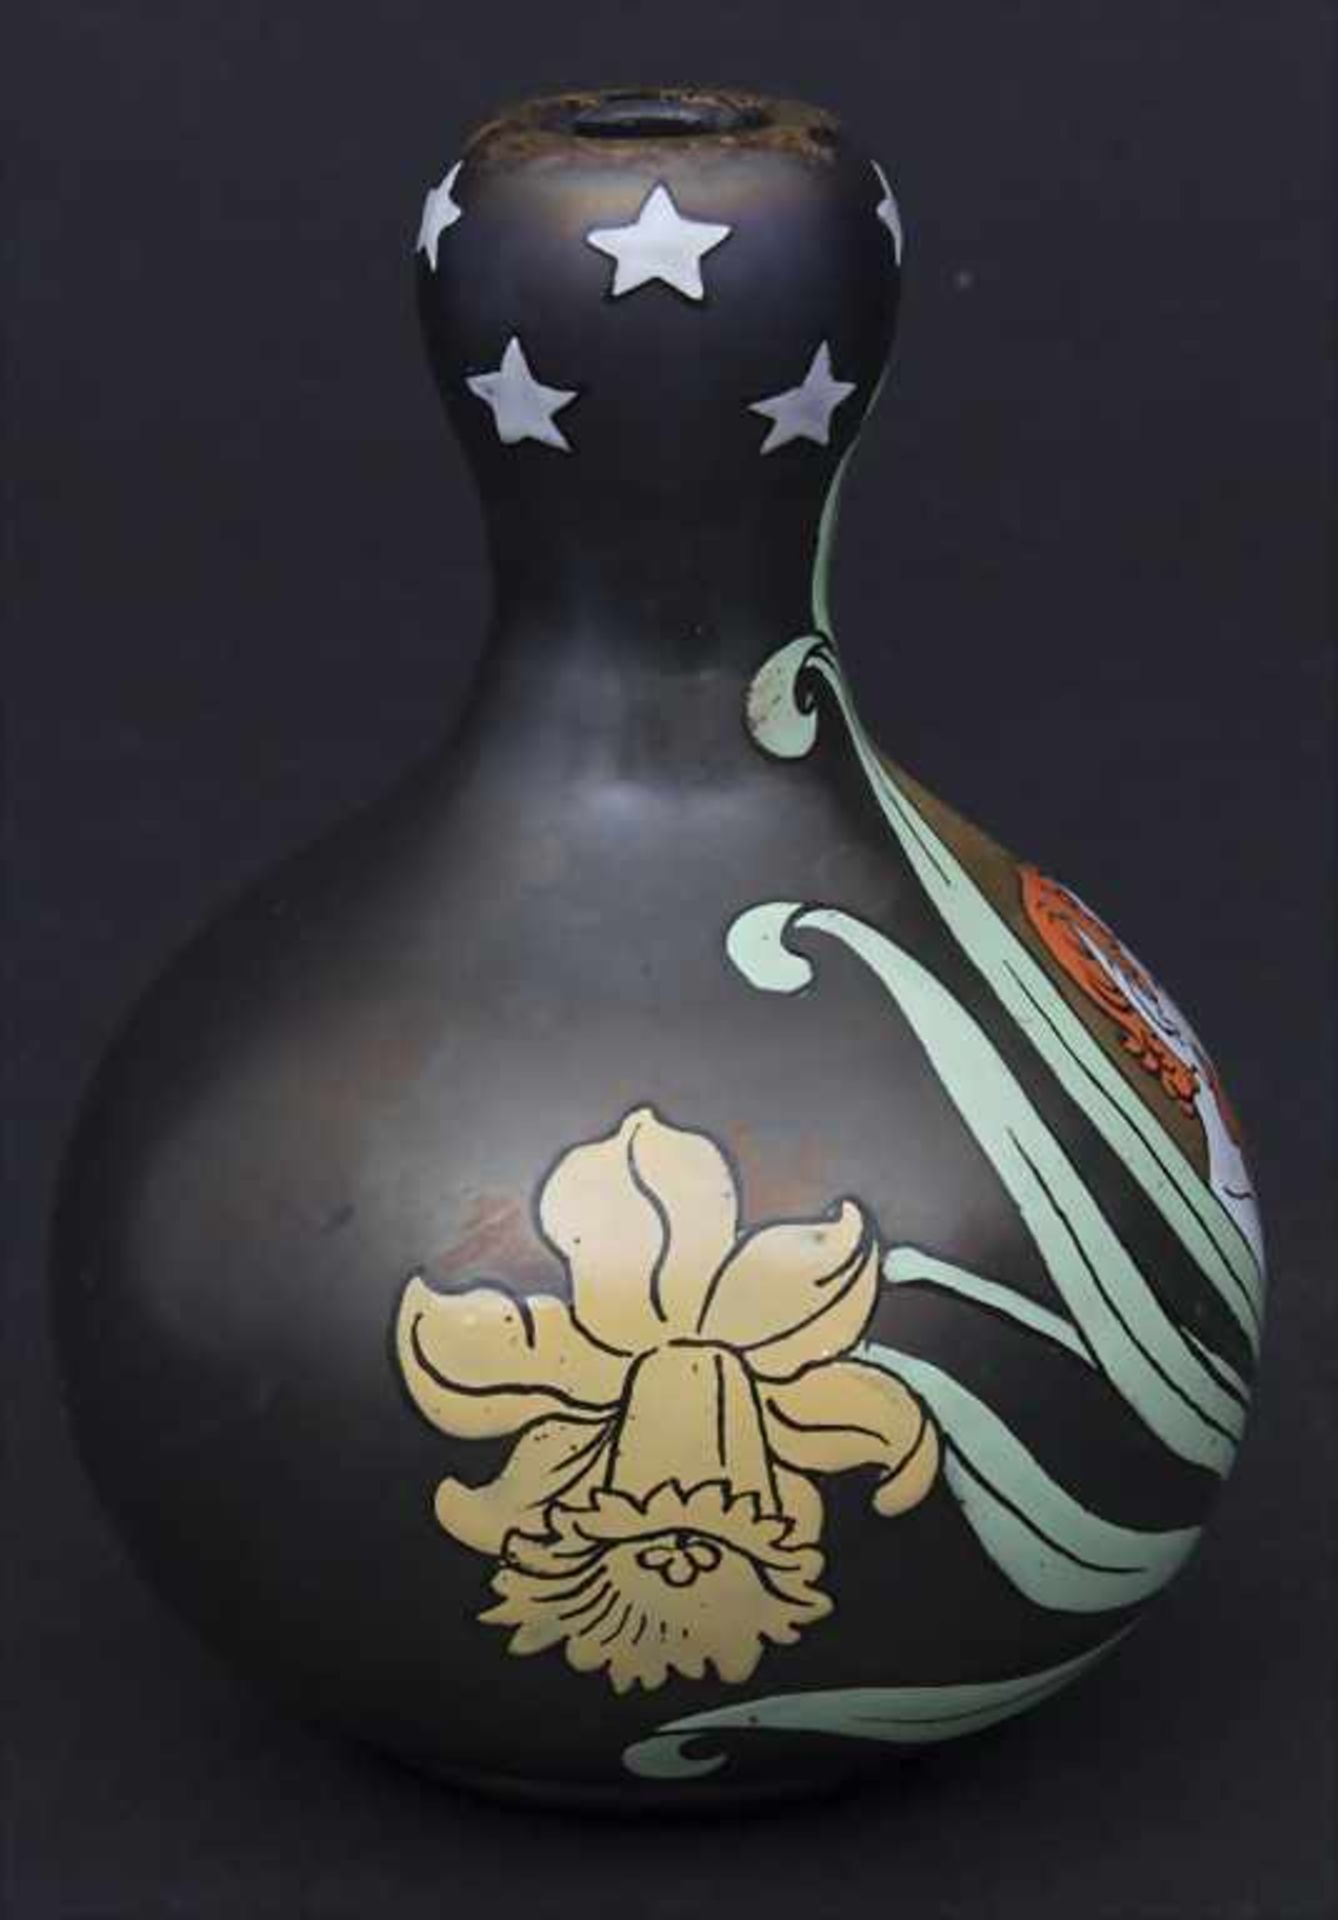 Jugendstil Vase / An Art Nouveau Vase, Fritz Heckert, Petersdorf, ca. 1900 - Image 2 of 5